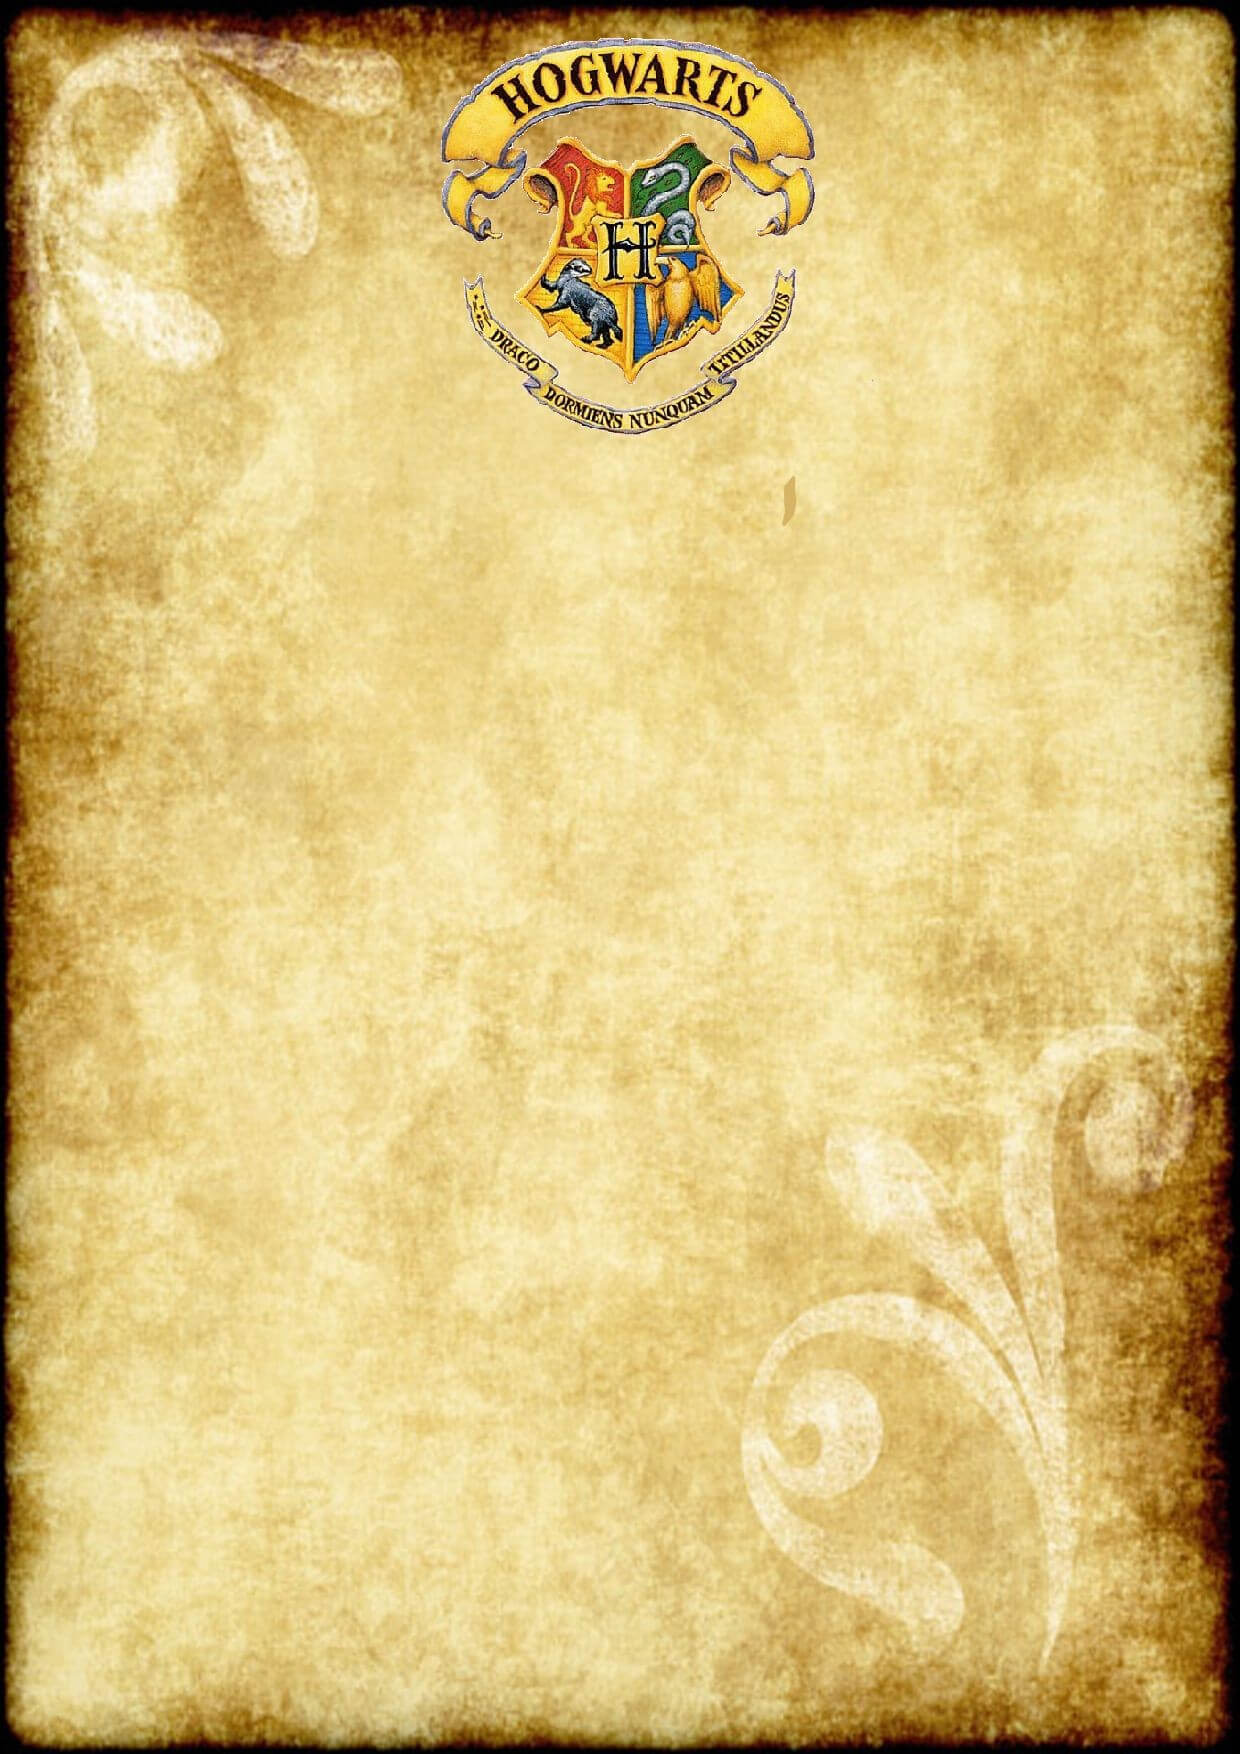 Harry Potter O W L S Certificate Blank Template Hogwarts Within Harry Potter Certificate Template